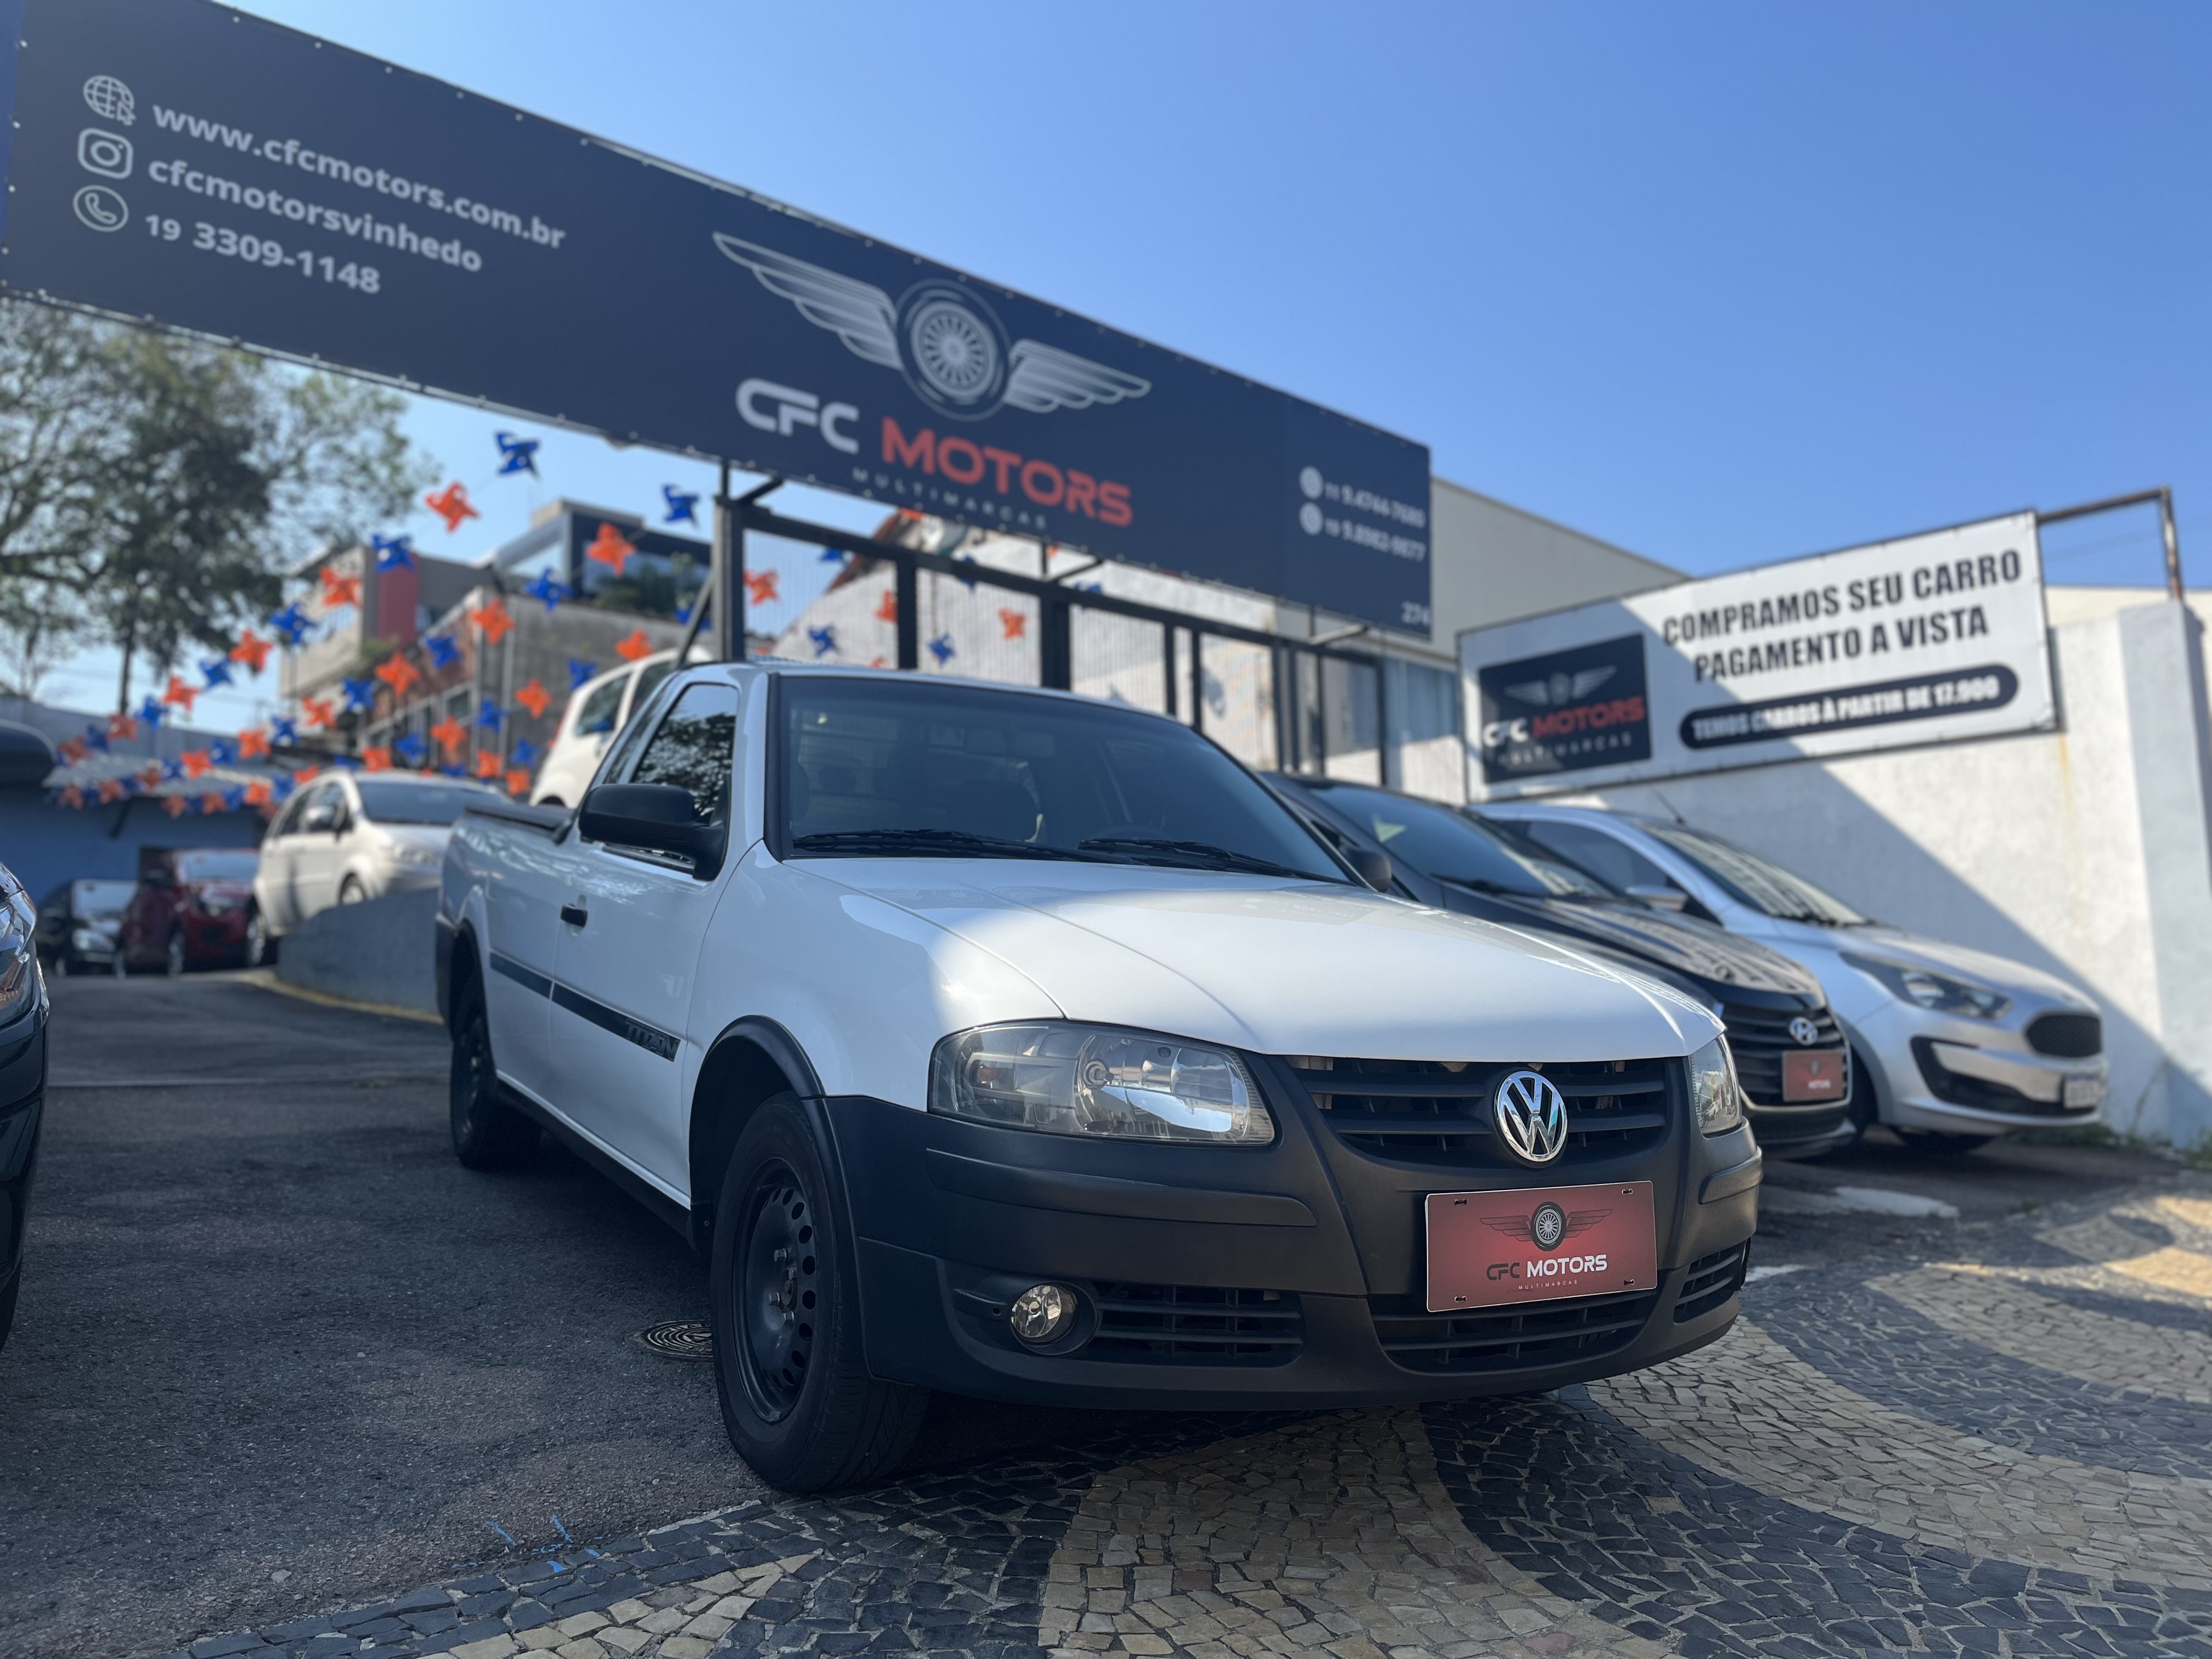 Carro Volkswagen Saveiro Titan à venda em todo o Brasil!